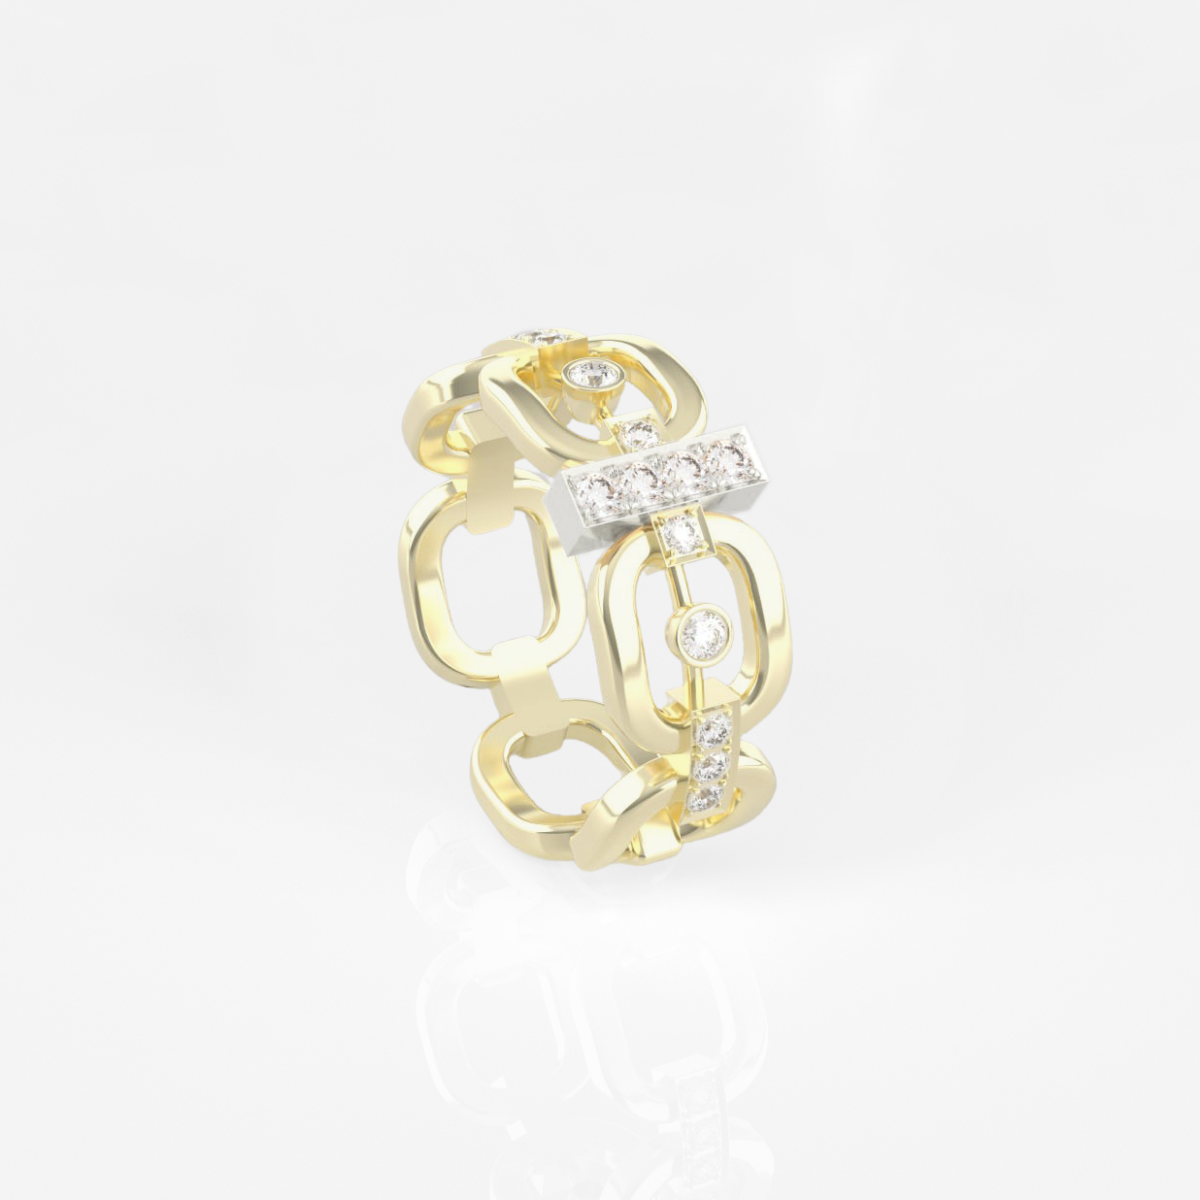 1 bague maillon en or jaune 18 carats sertie de diamants avec une barrette en or blanc 18 carats sertie de diamants.